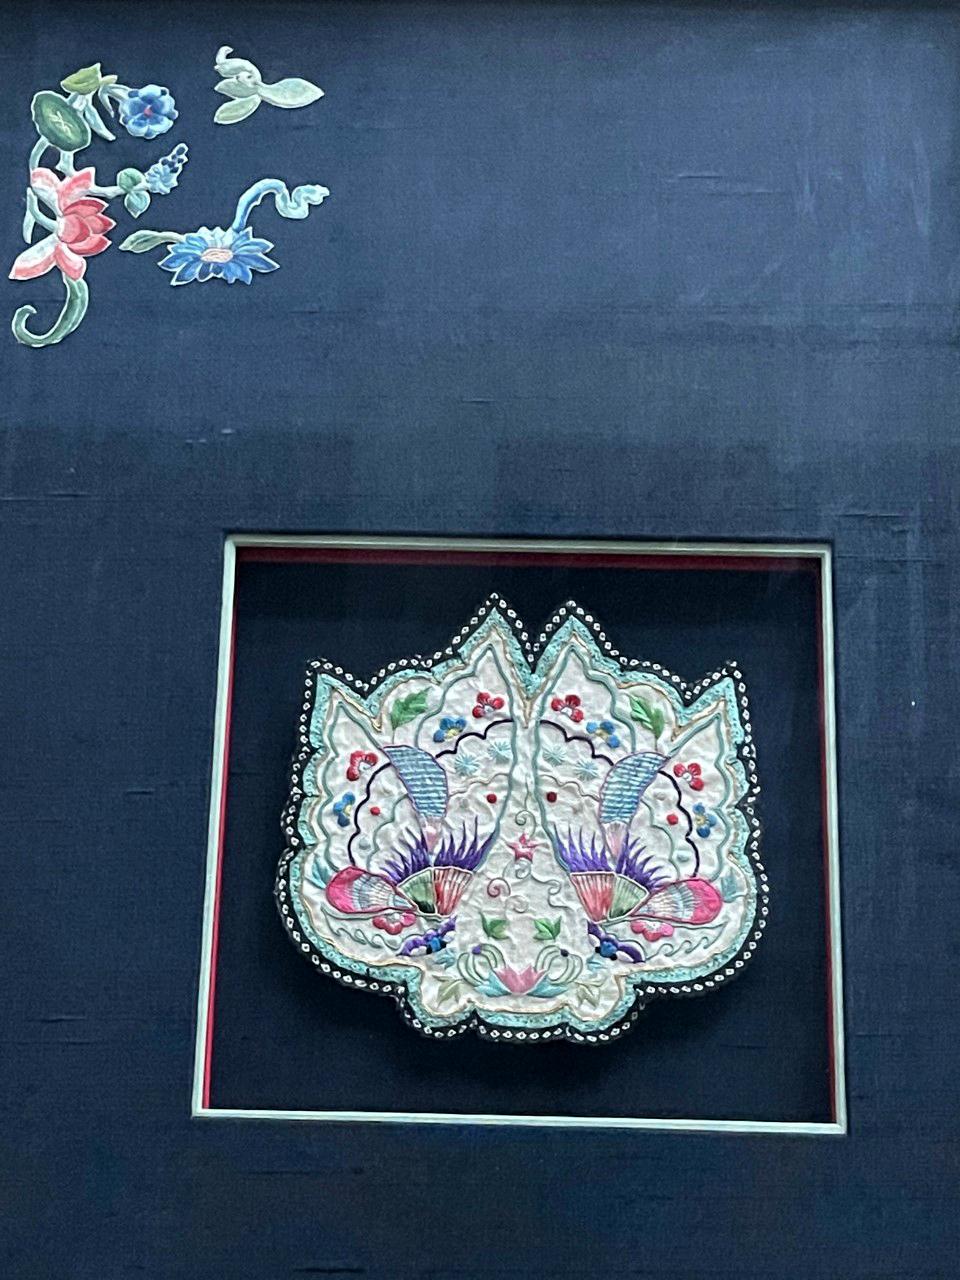 Un beau sac à main antique brodé de Chine, vers le 19e siècle de la dynastie Qing, artistiquement présenté dans un cadre en bois doré avec des passe-partout contrastés de couleur bleu profond. Appartenant à une dame noble, cette bourse serait